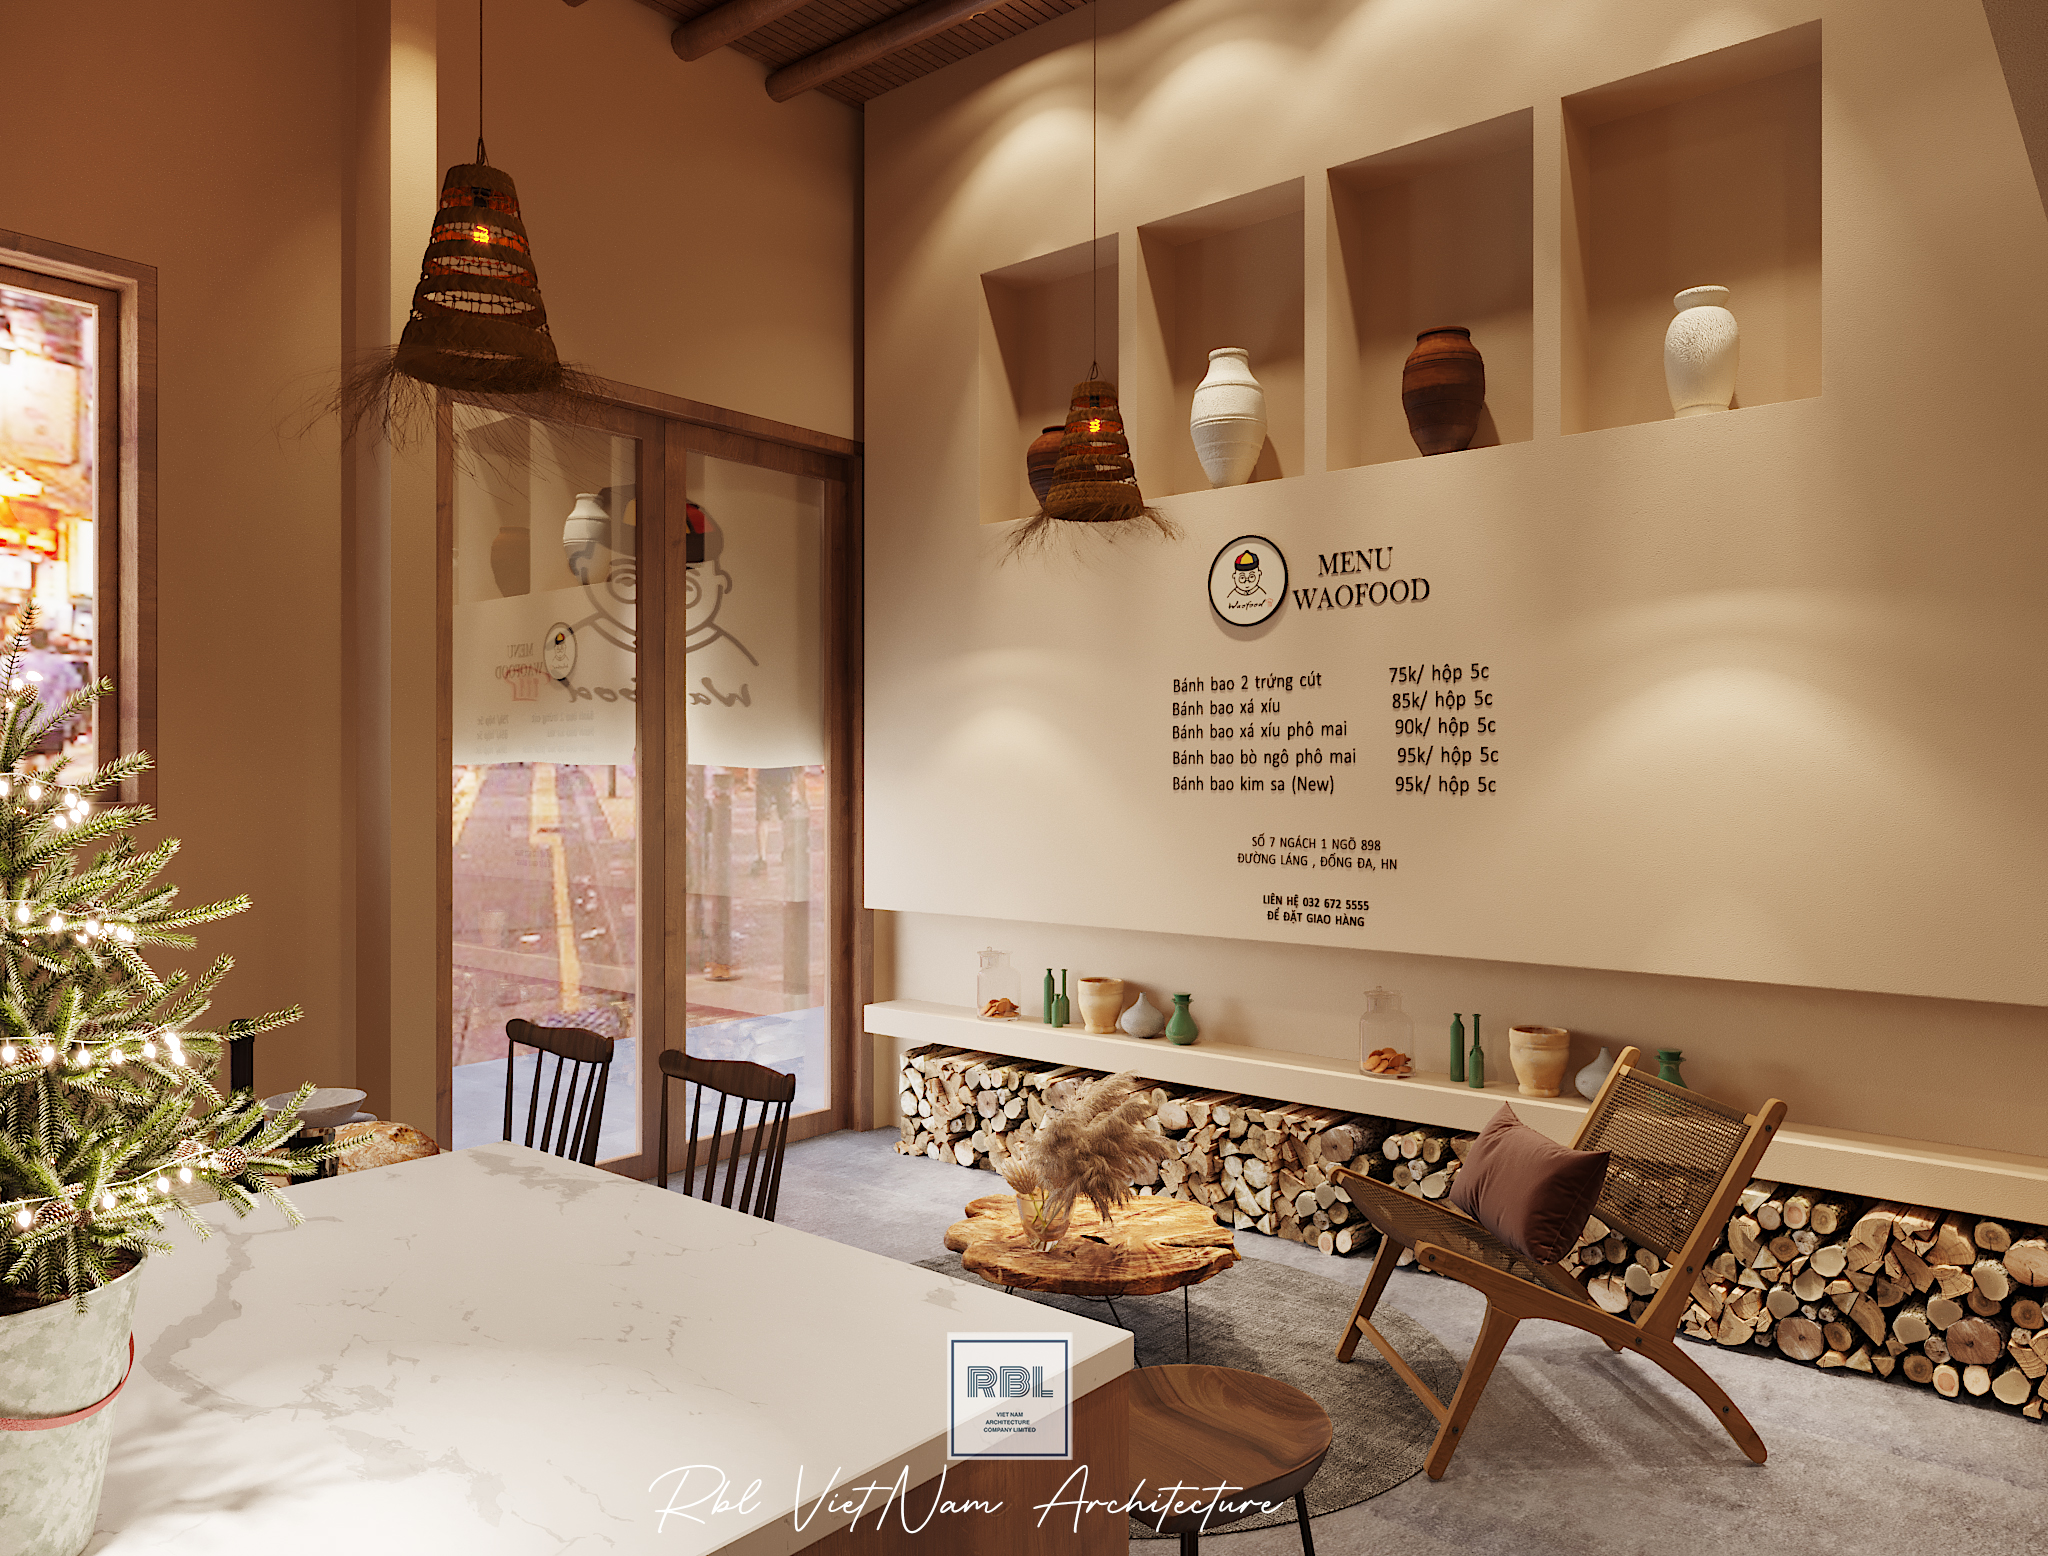 Thiết kế nội thất Nhà Hàng tại Hà Nội Cải tạo cửa hàng Waofood 1665148537 3